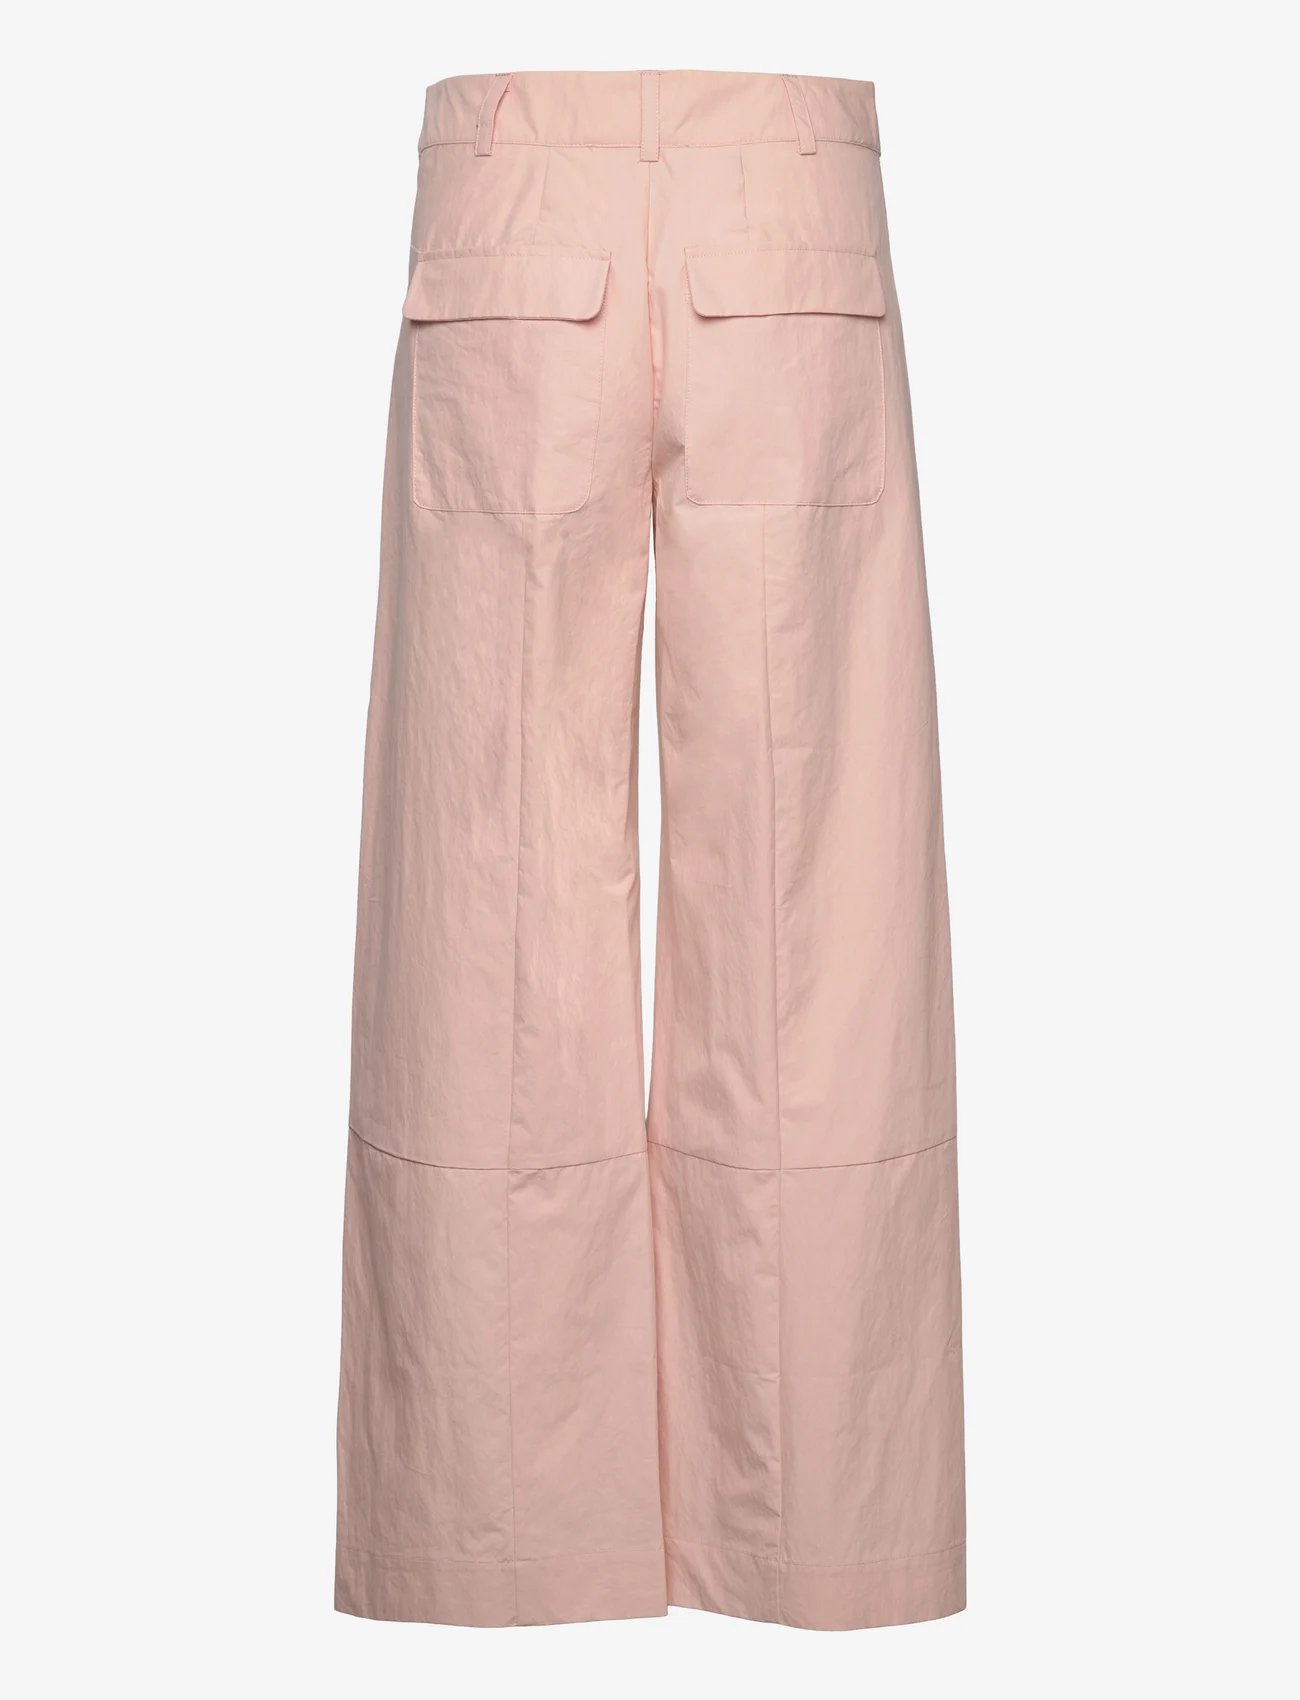 Sofie Schnoor - Trousers - light pink - 1